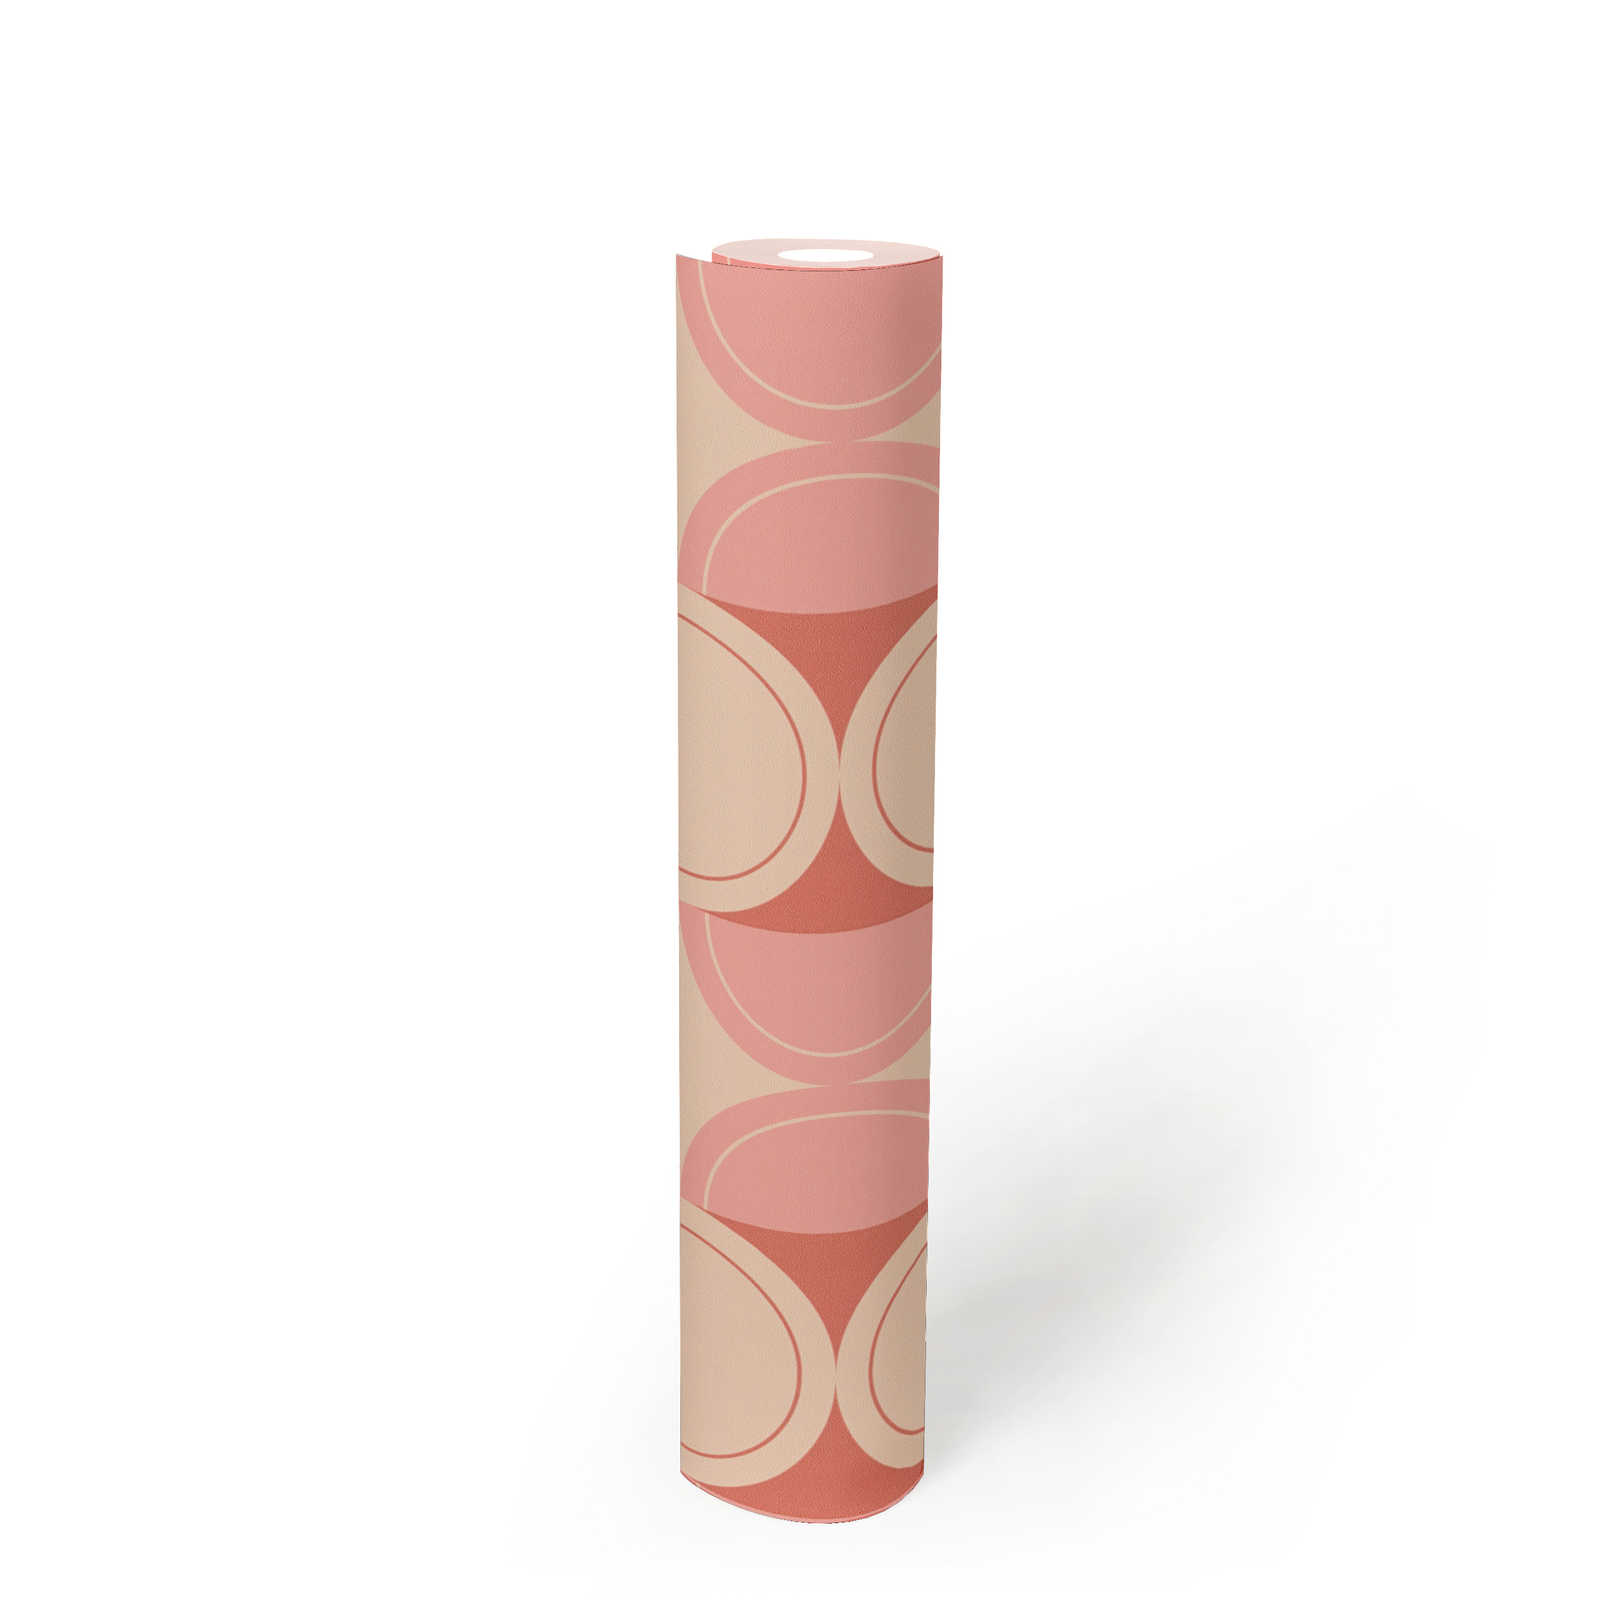             Retro vliesbehang met halve cirkel patroon - beige, roze, rood
        